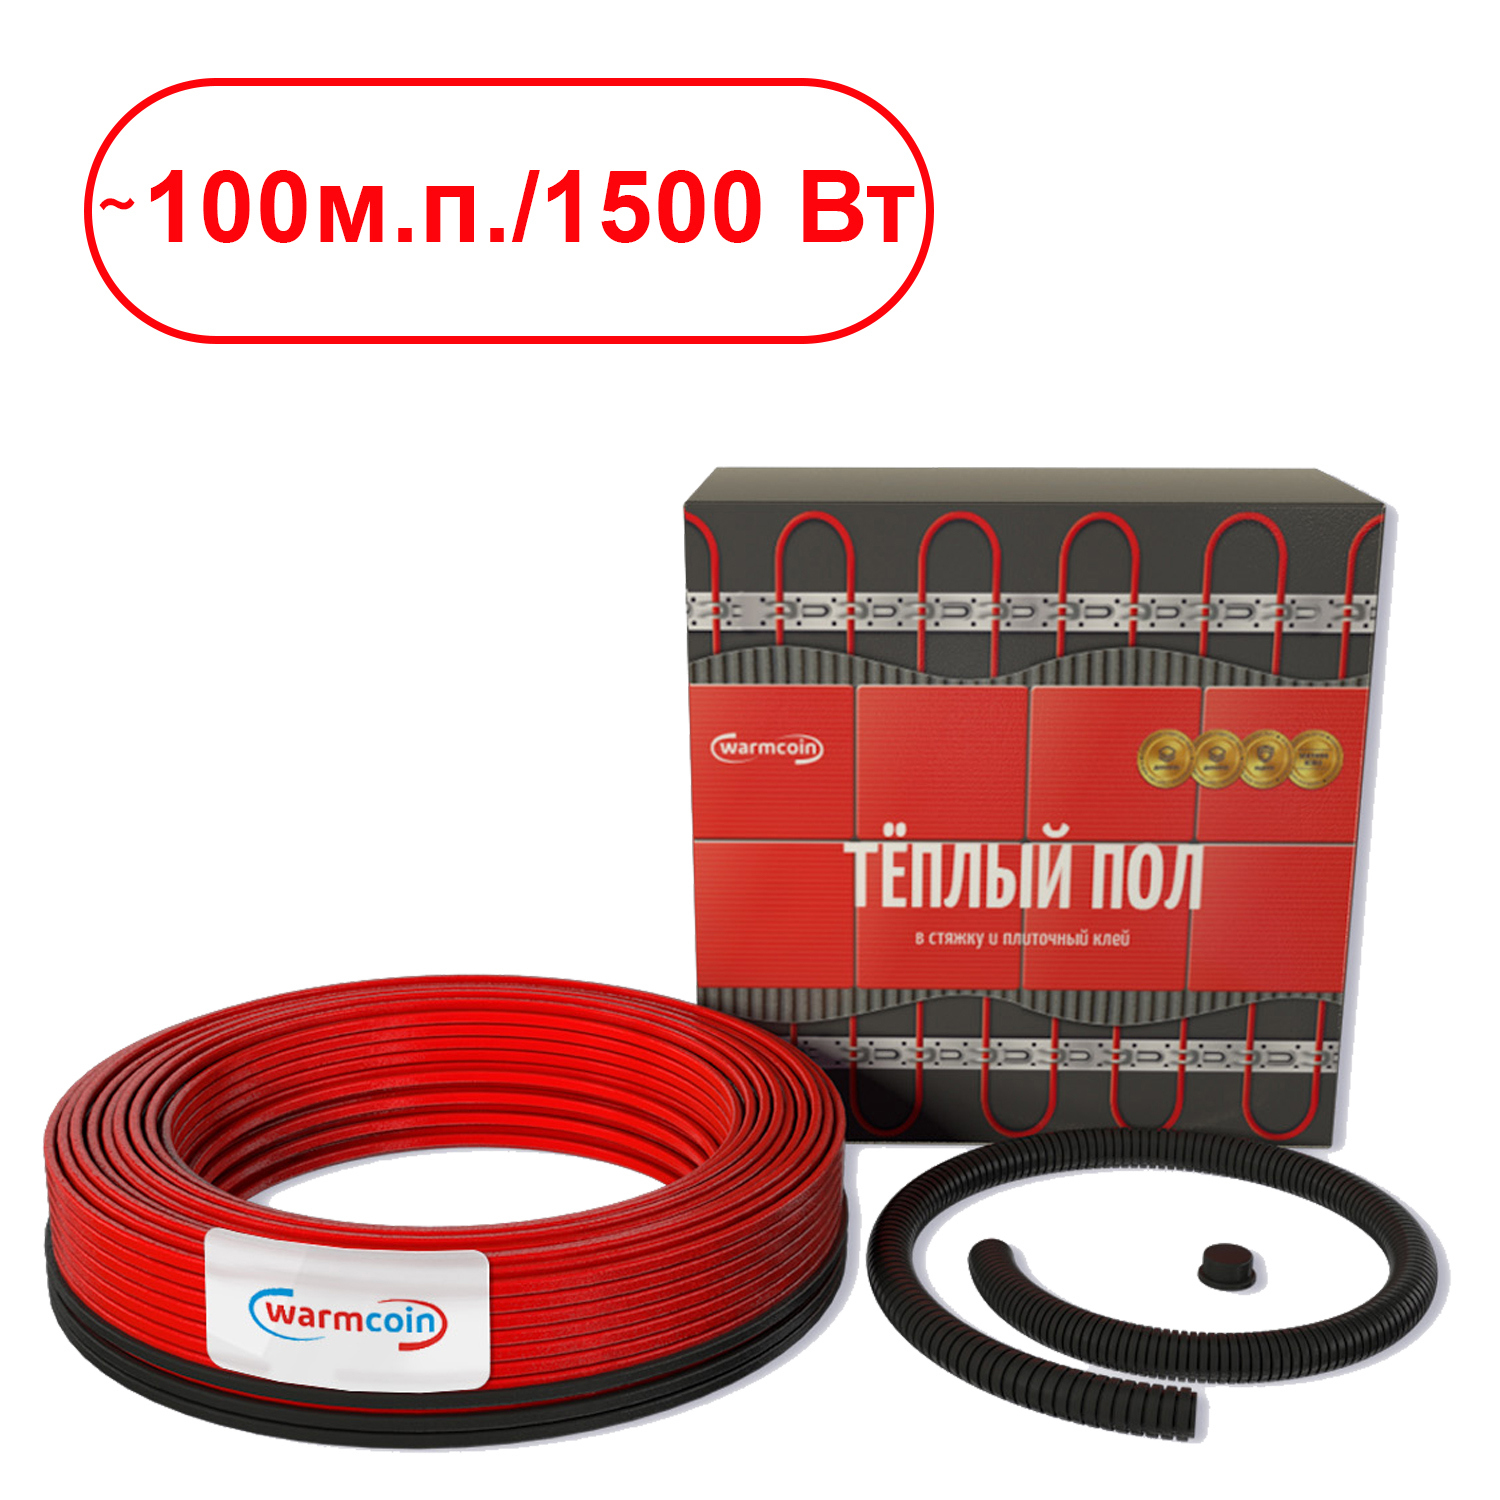 91084258 Нагревательный кабель для теплого пола Universal 100 м 1500 Вт STLM-0475820 WARMCOIN